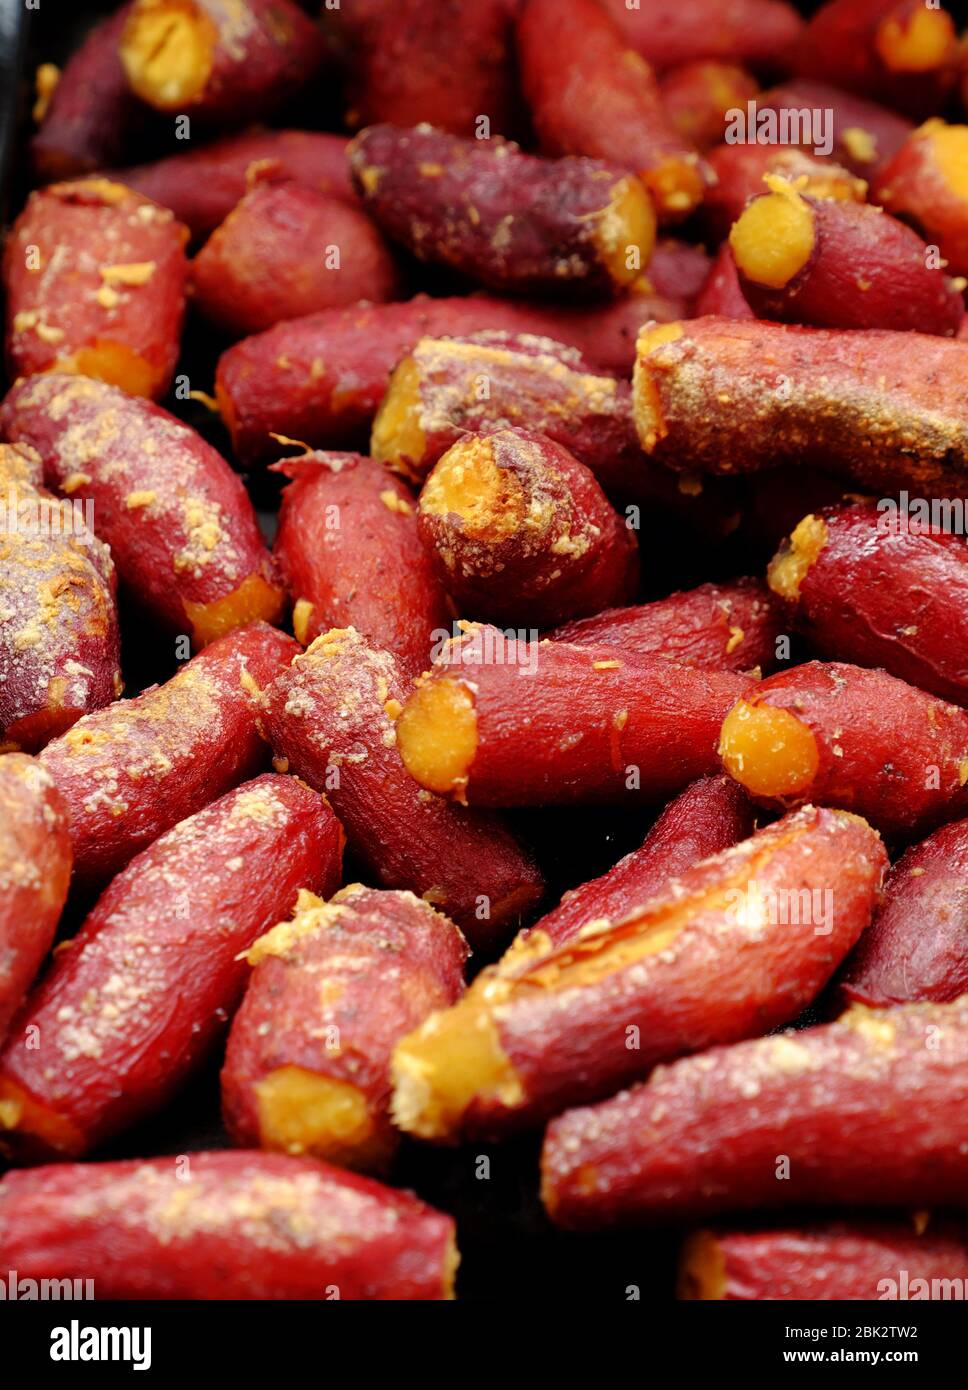 Alta vista casalinga vietnamita cibo per la dieta, patate dolci al forno con zucchero e zenzero in buccia rossa sul vassoio Foto Stock